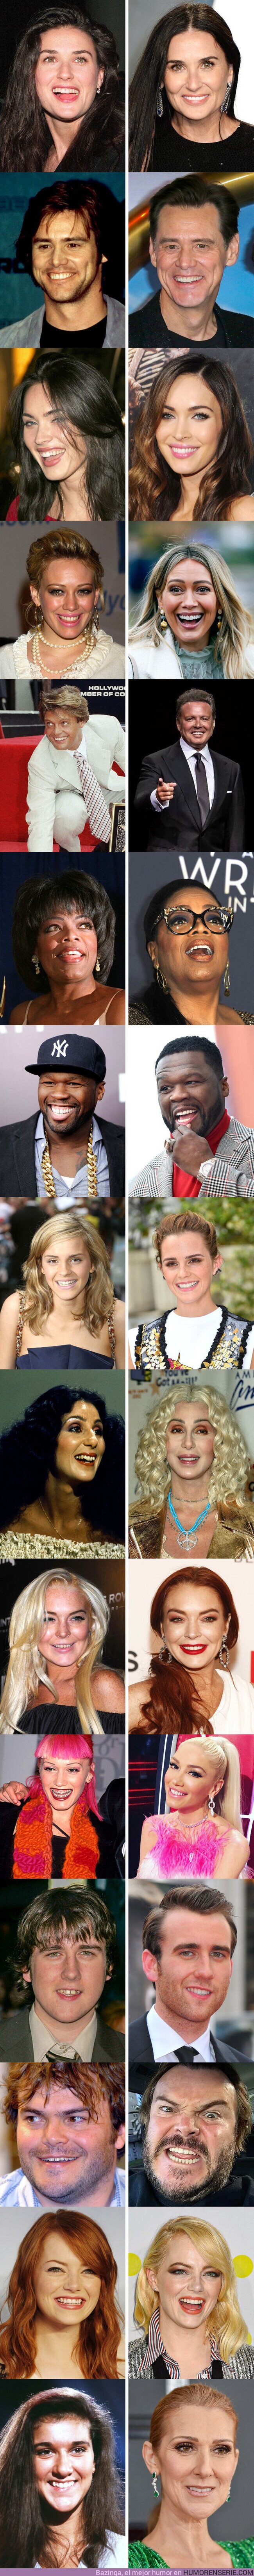 68505 - GALERÍA: Mira cómo cambió la sonrisa de estos 15 famosos luego de que arreglaron sus dientes (nueva edición)